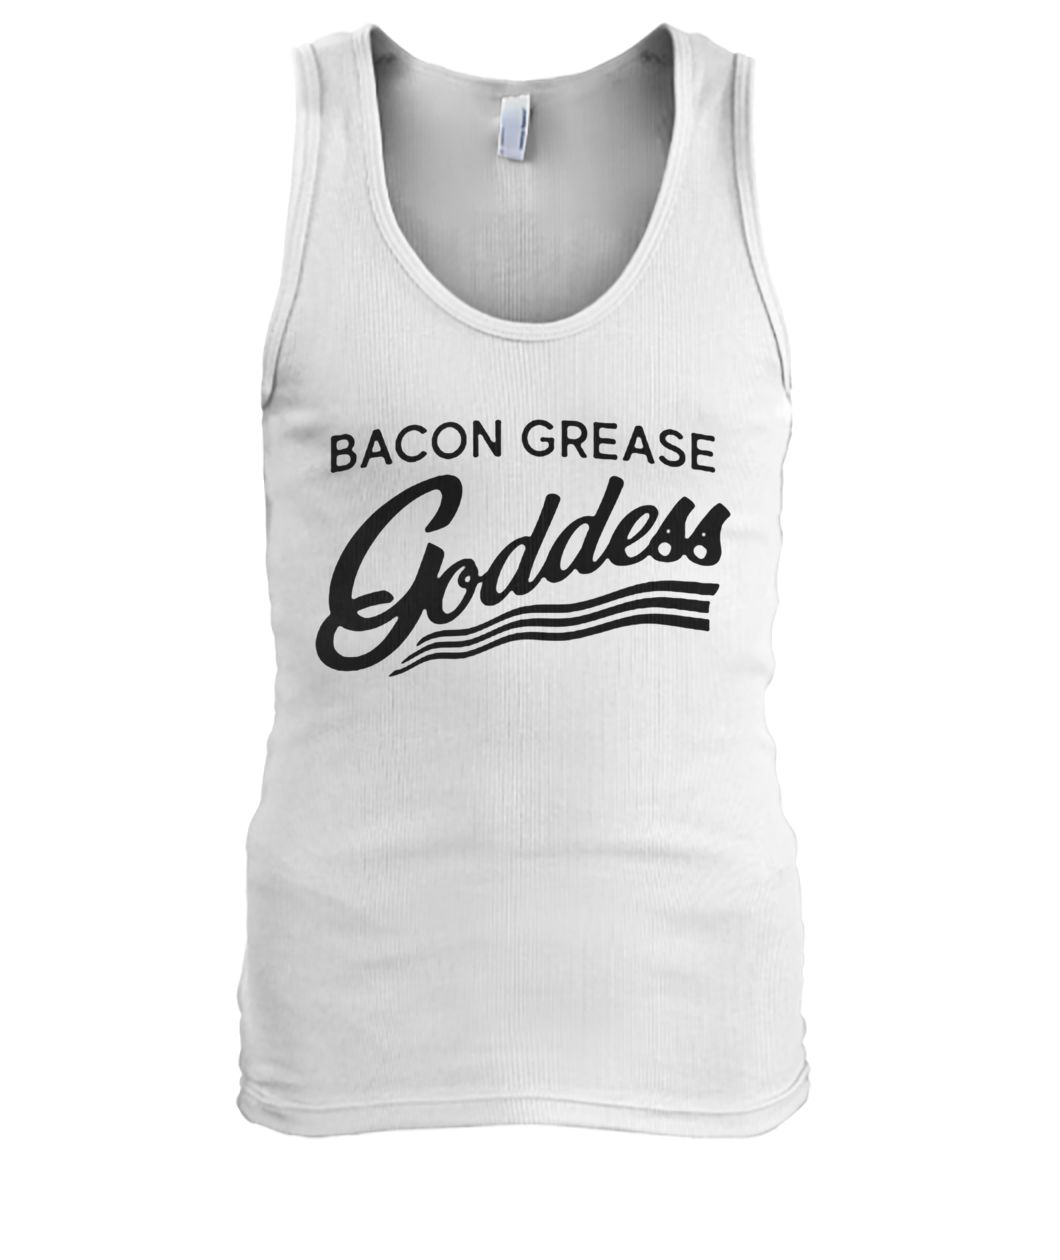 Bacon grease goddess men's tank top